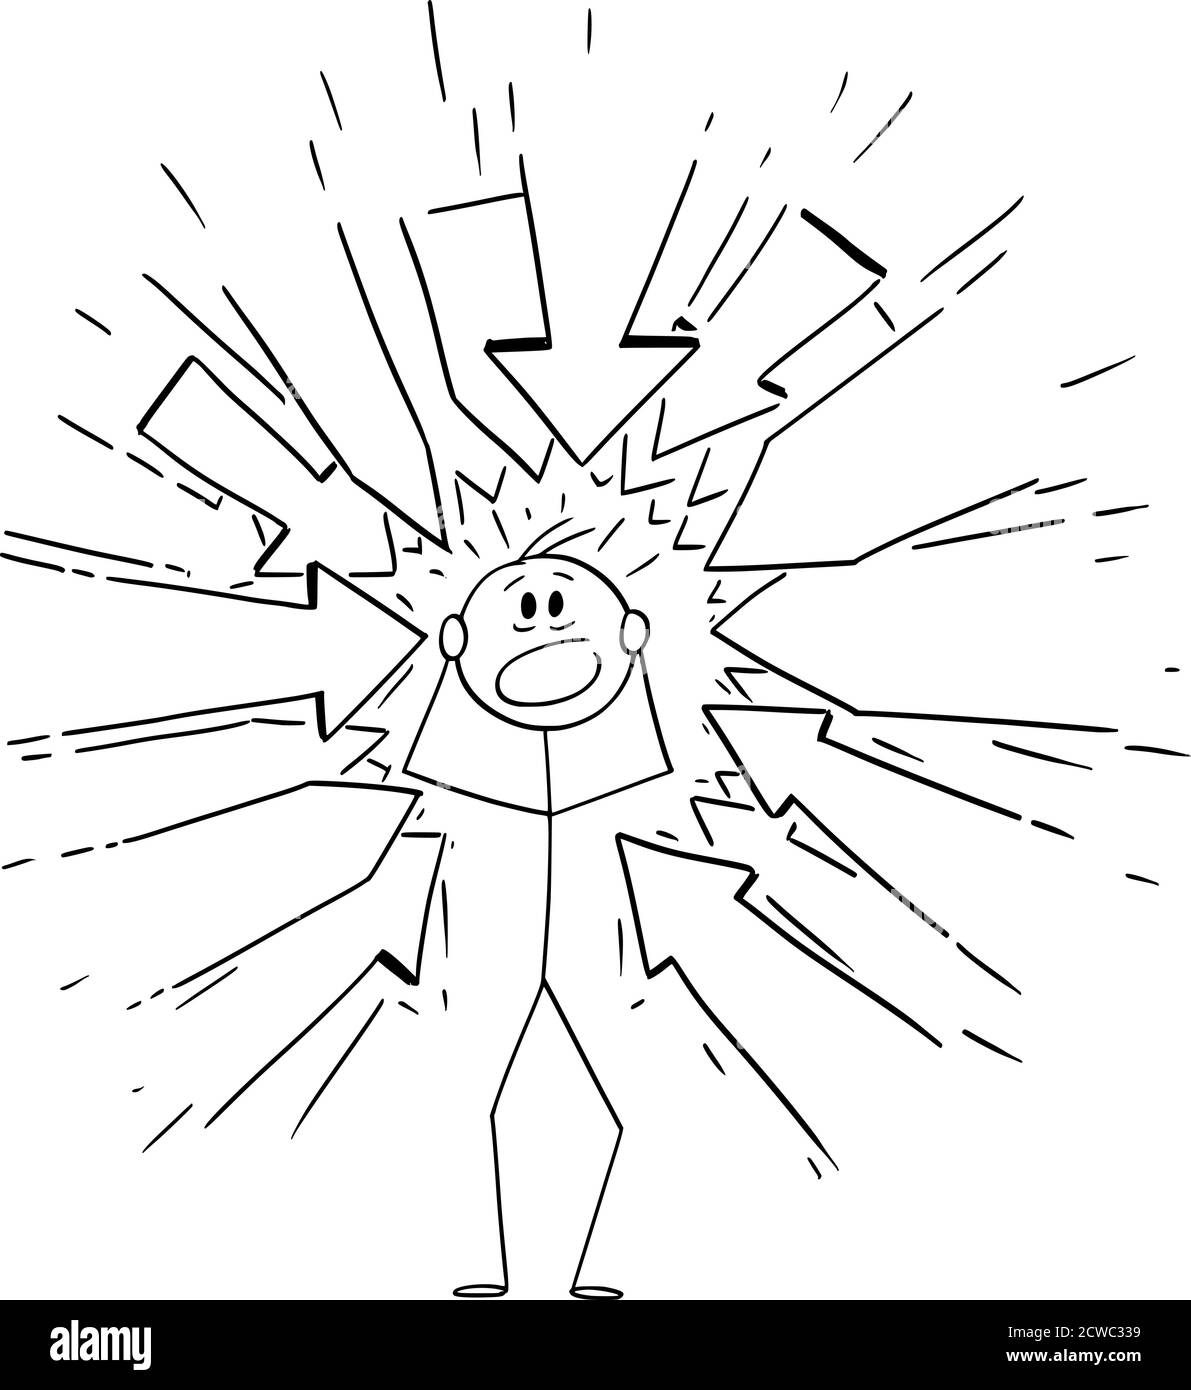 Vettore cartoon figura disegno disegno illustrazione concettuale di uomo stressato con molte frecce che lo puntano come qualche richiesta o incolpandolo. Illustrazione Vettoriale